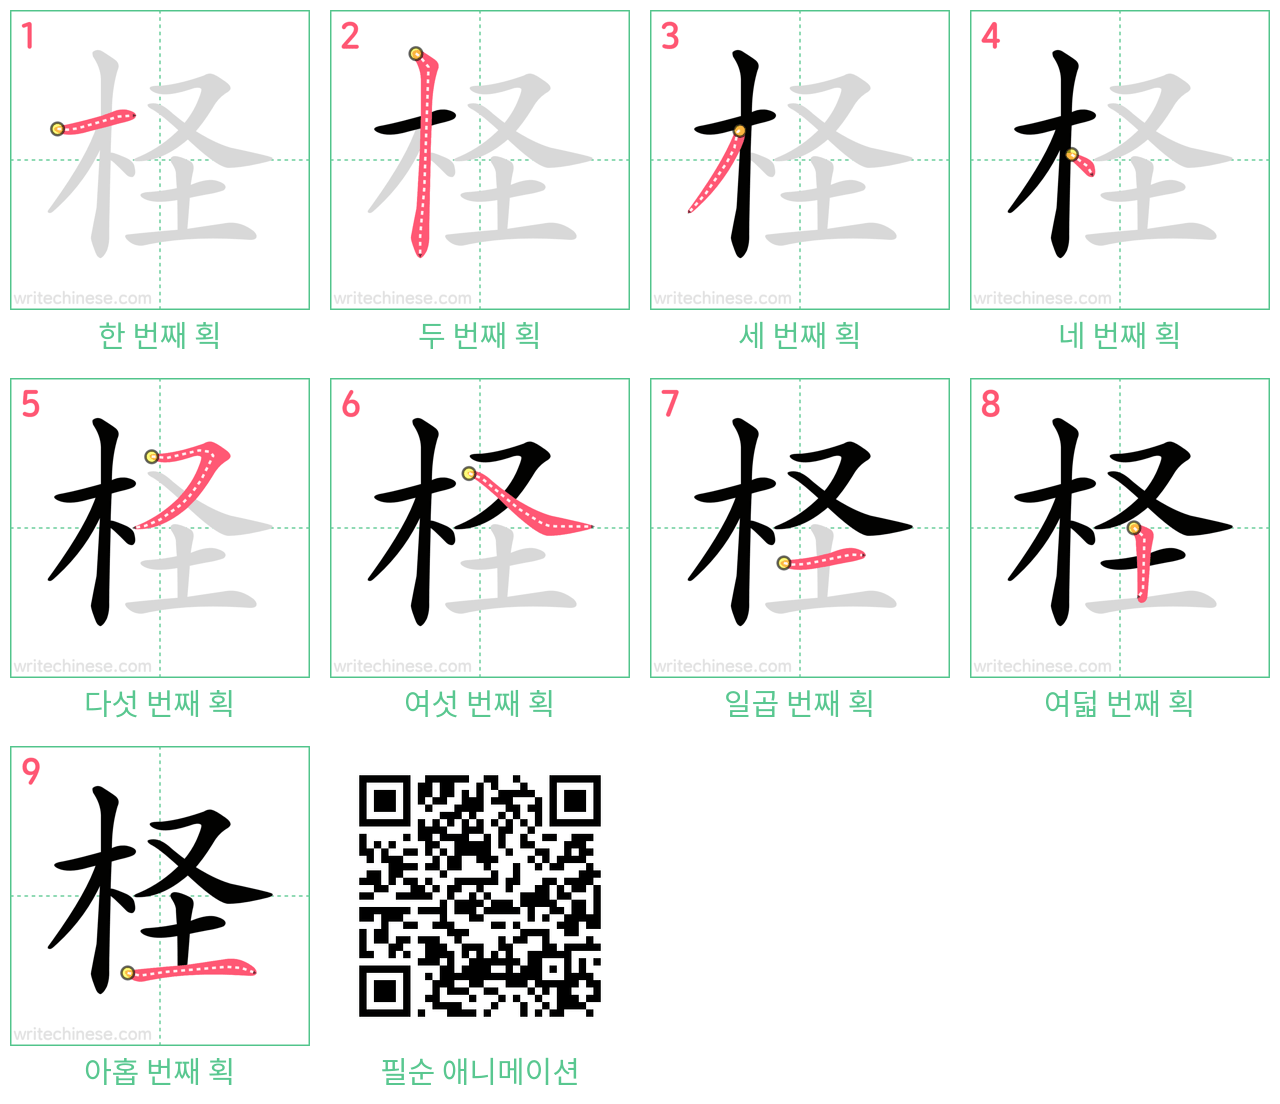 柽 step-by-step stroke order diagrams